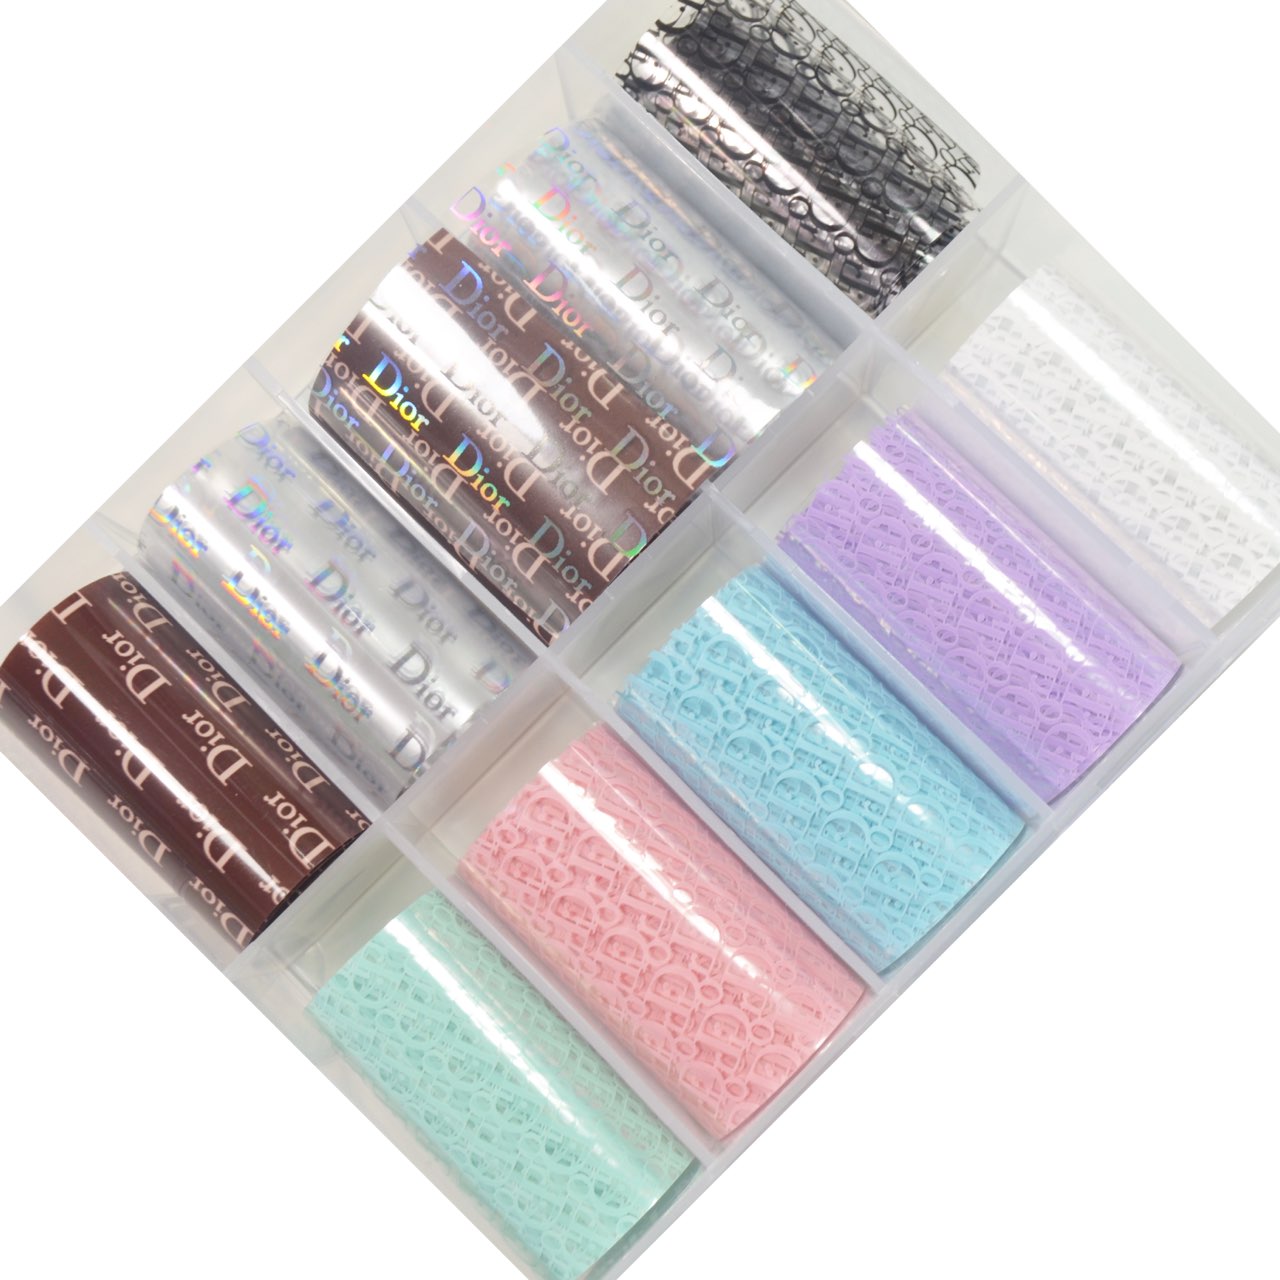 10 Colors Dior Nail Foils